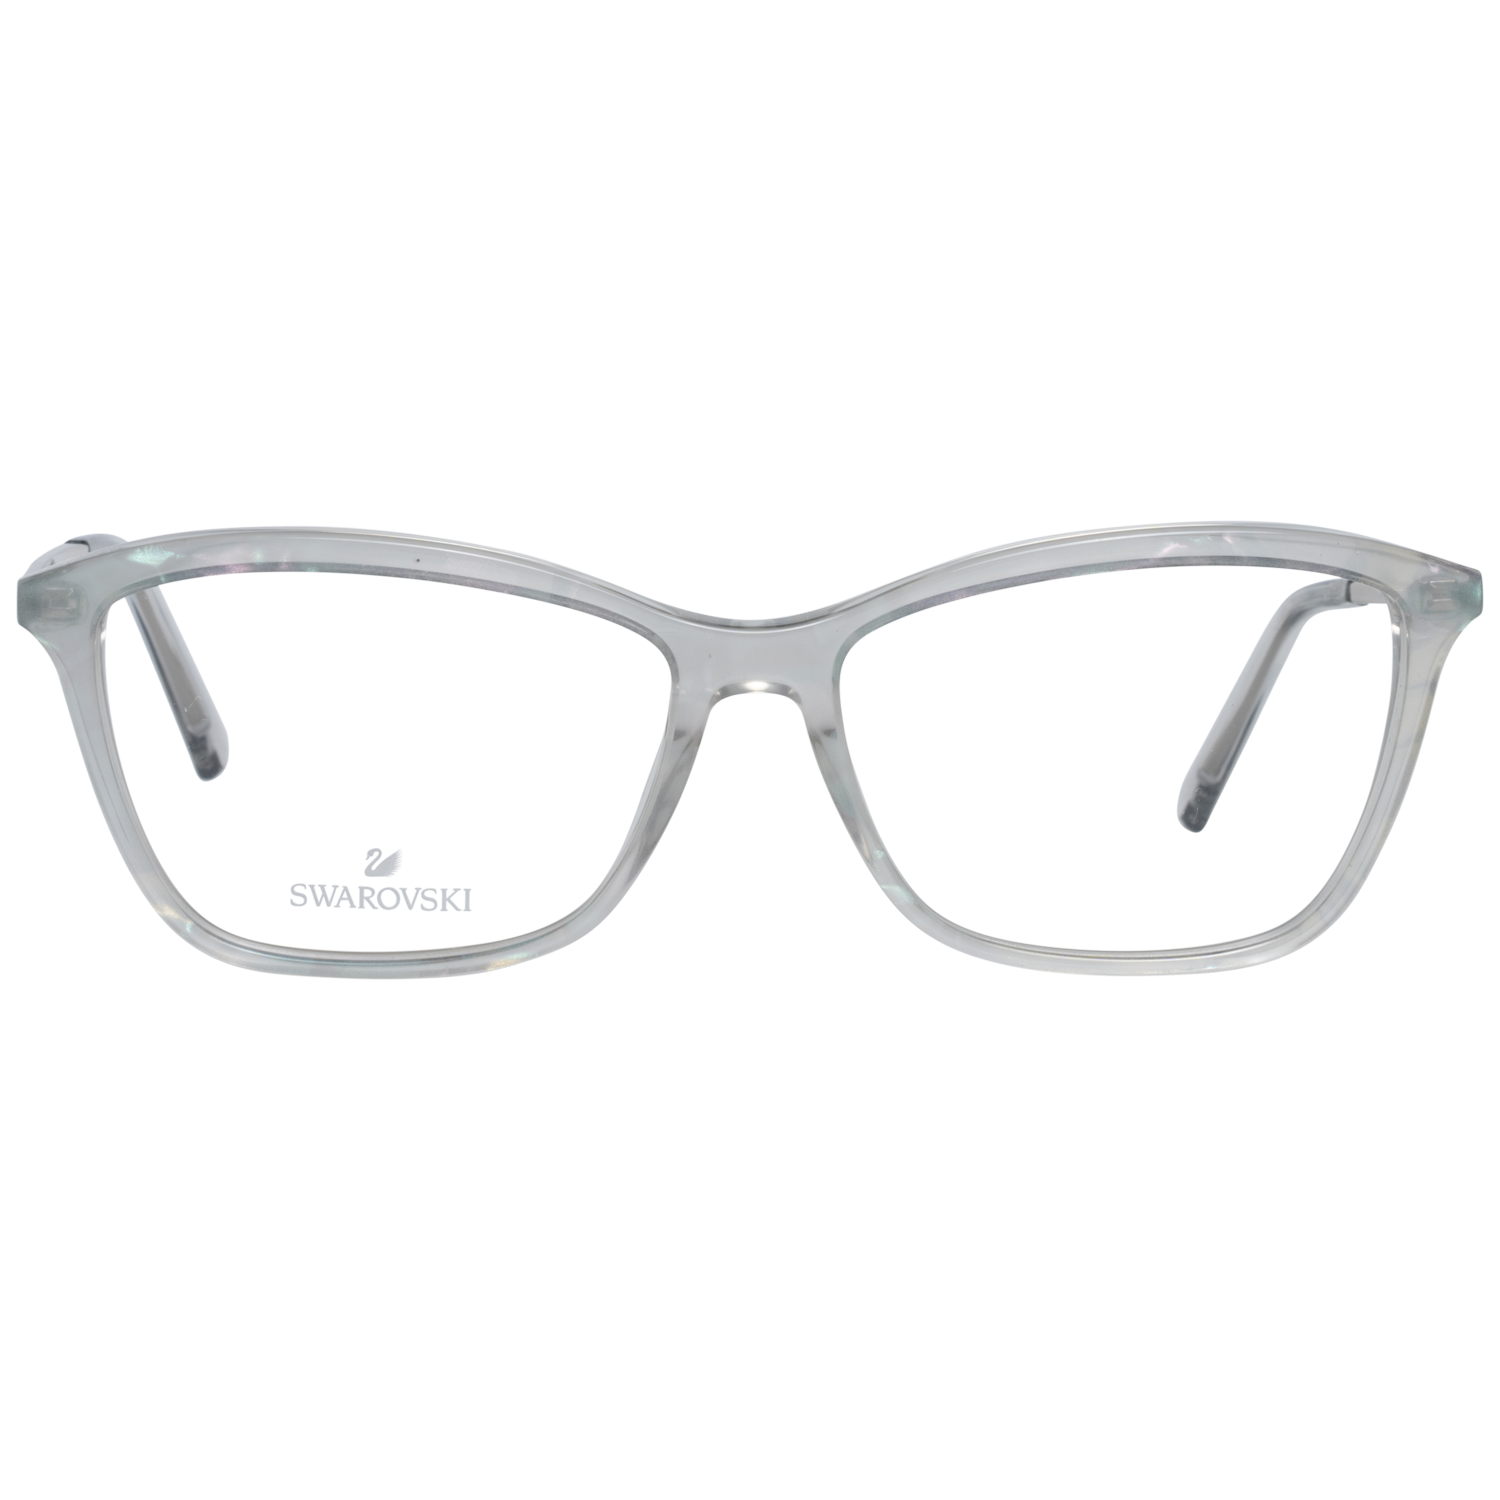 Swarovski Frames Swarovski Women Glasses Optical Frame SK5314 020 54 Eyeglasses Eyewear UK USA Australia 